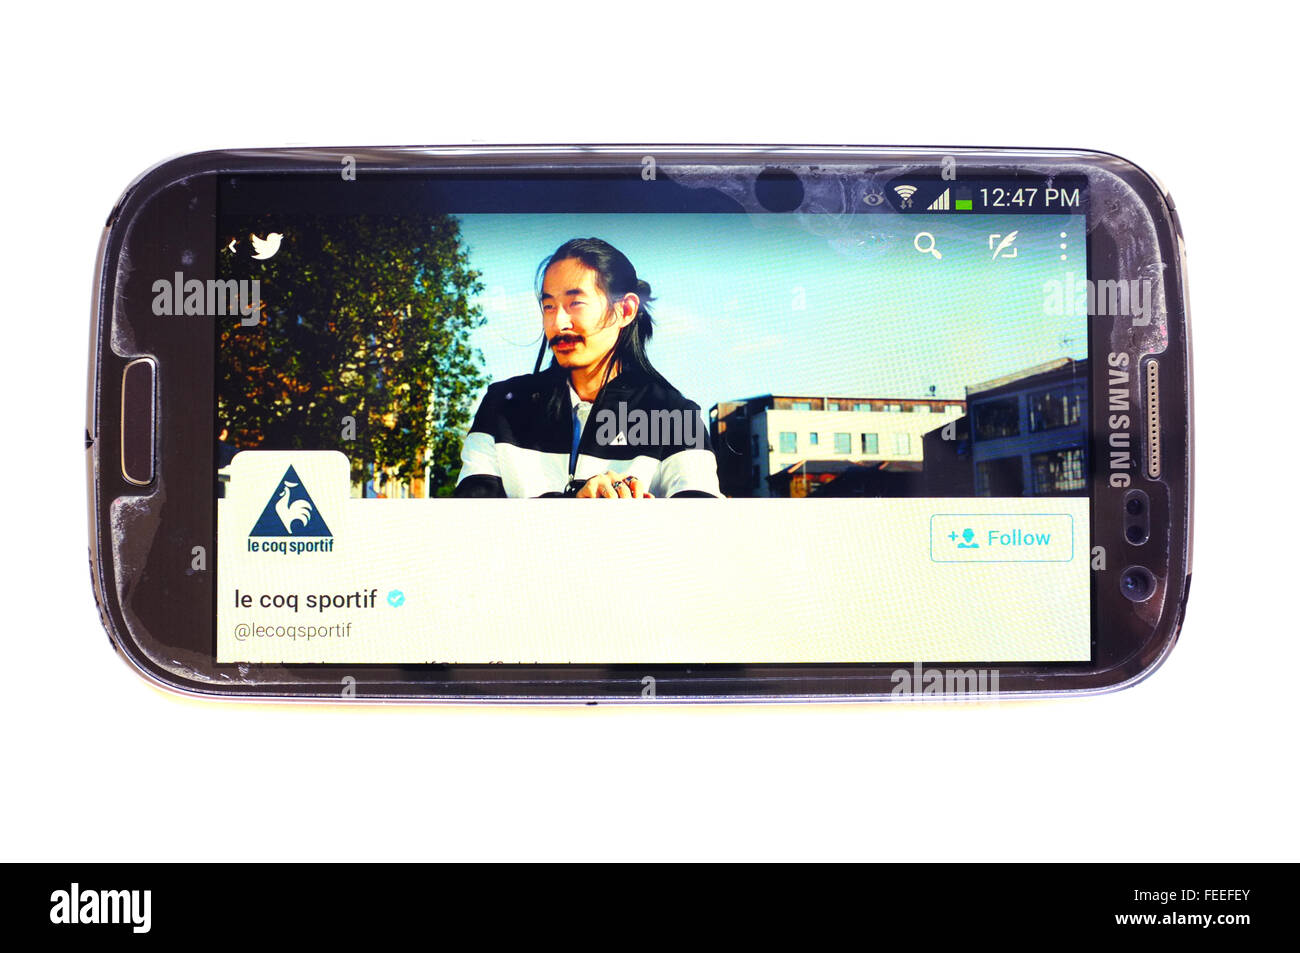 Le Coq Sportif Twitter Seite auf einem Smartphonebildschirm vor weißem Hintergrund fotografiert. Stockfoto